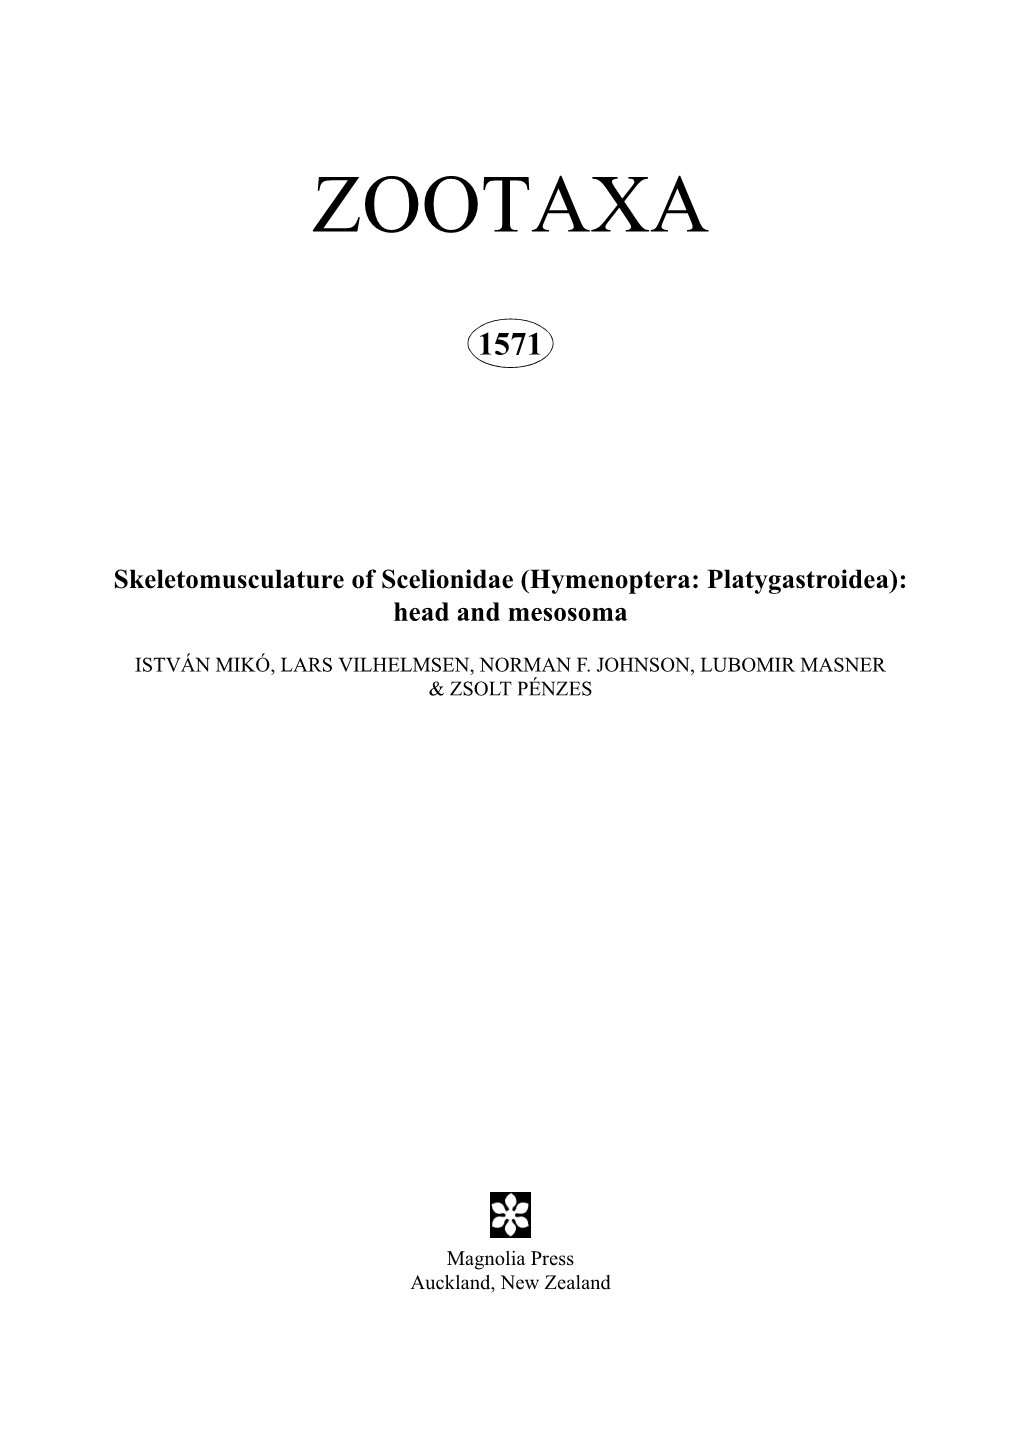 Zootaxa,Skeletomusculature of Scelionidae (Hymenoptera: Platygastroidea)